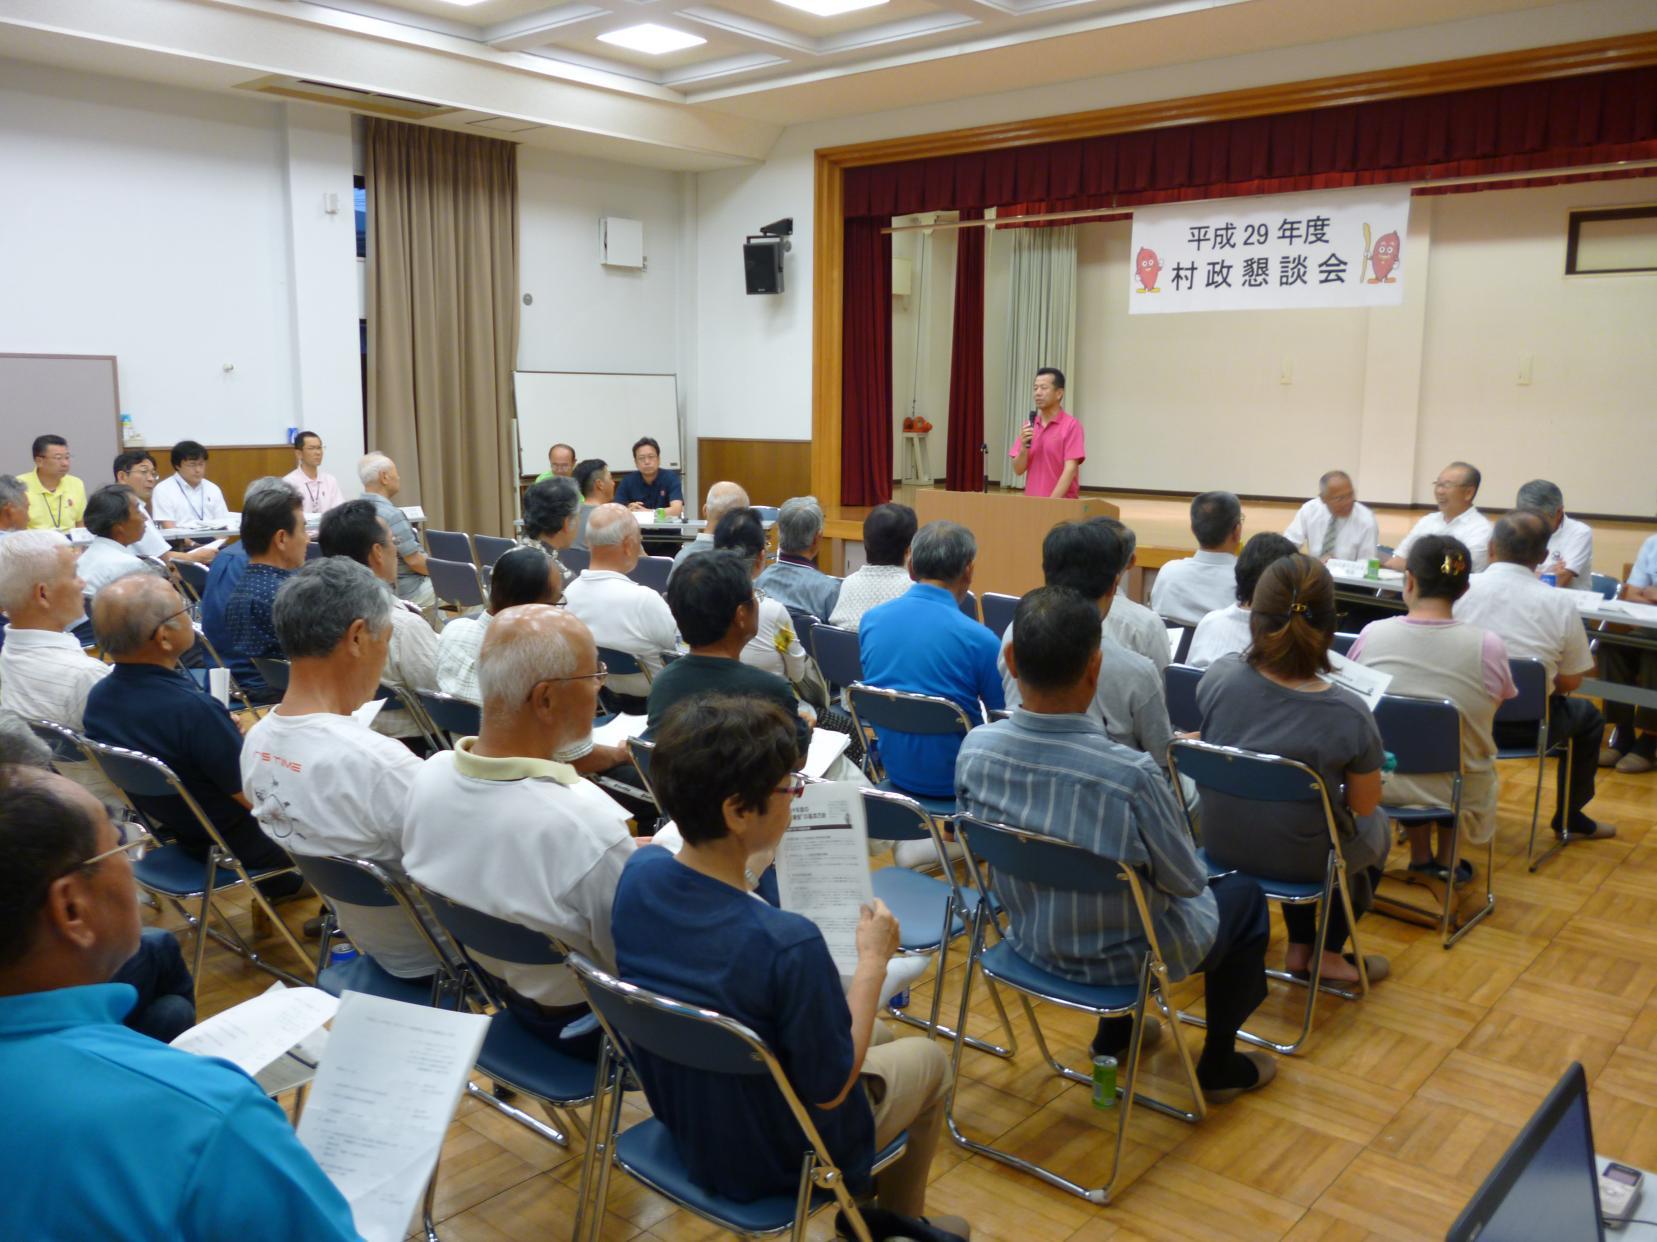 舟石川・船場地区村政懇談会にて、前に立ちマイクを持って話をしている男性と席に座り話を聞いている参加者たちの写真